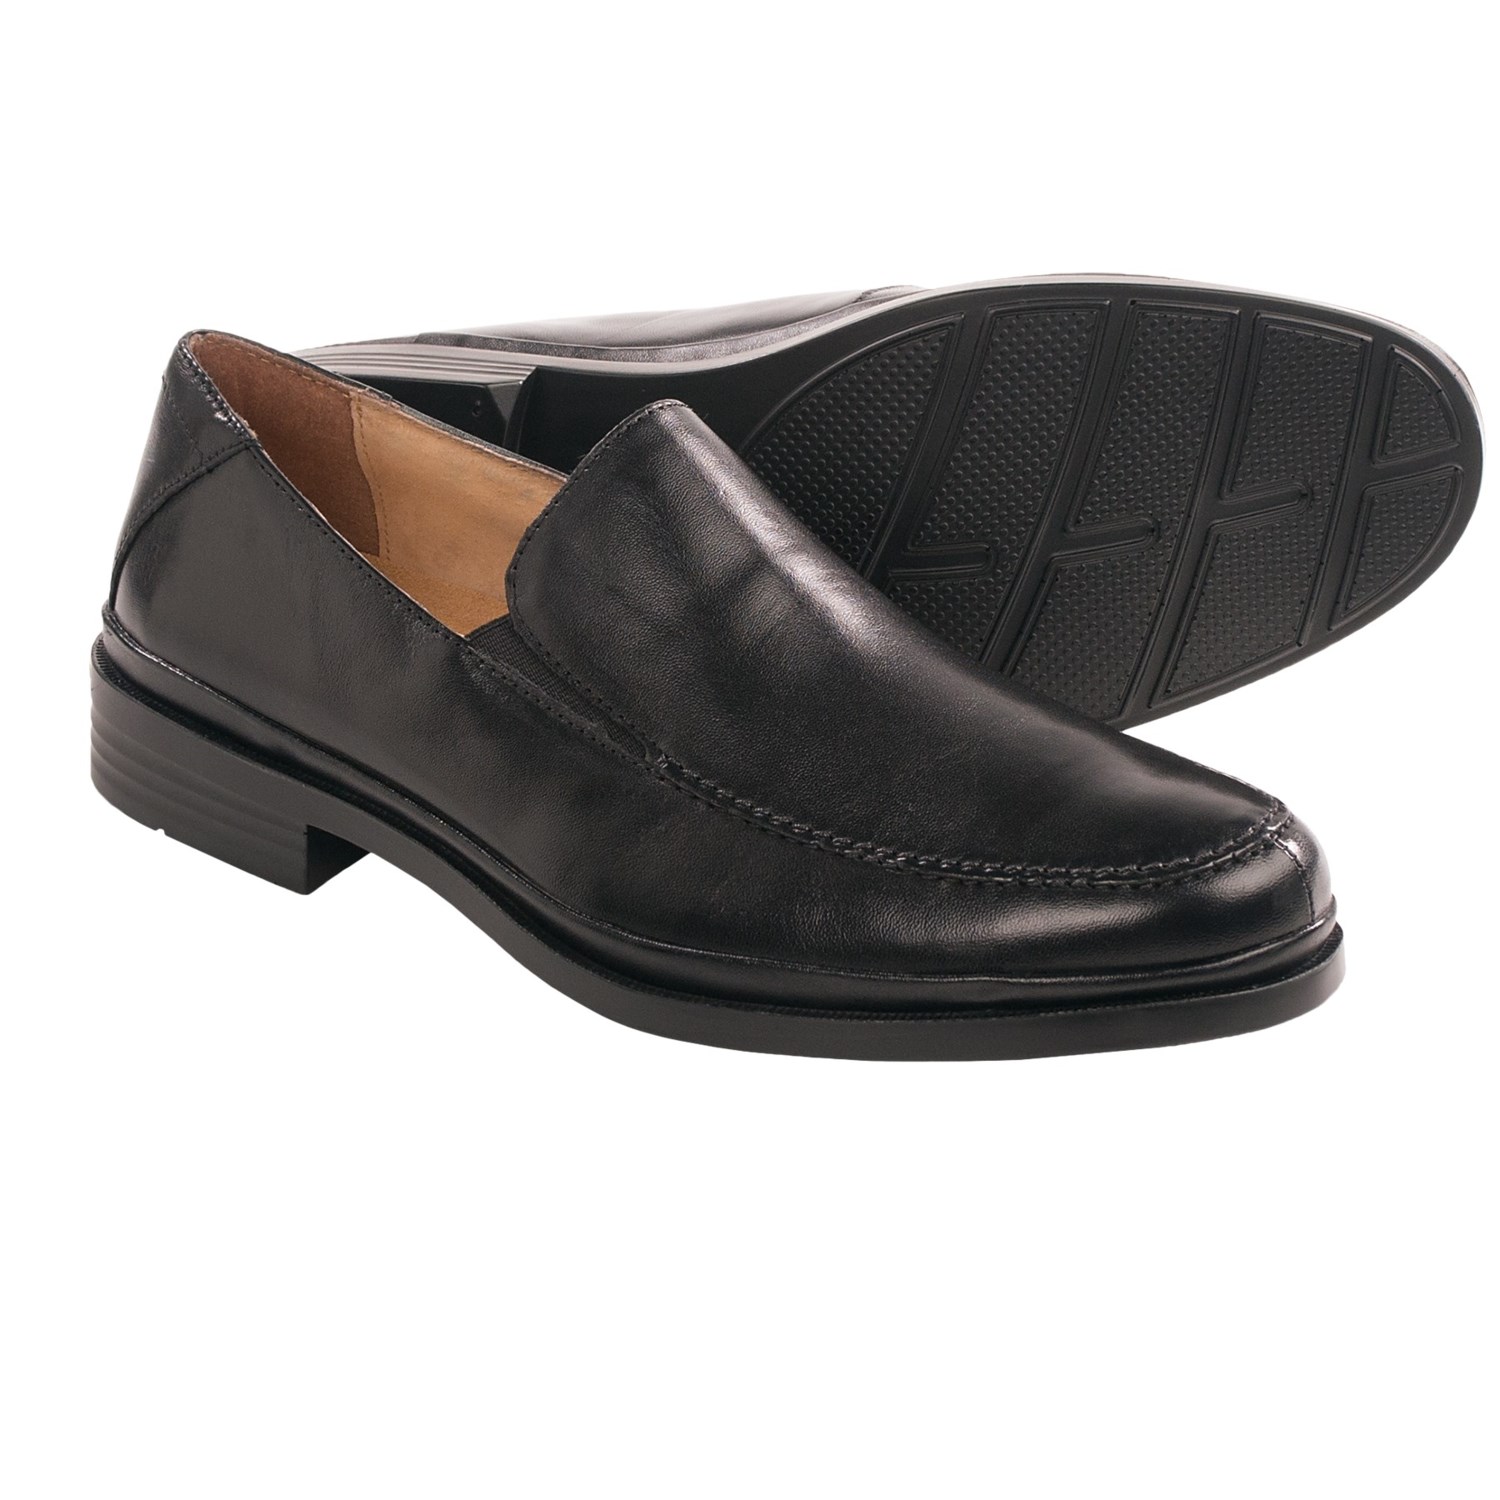 Florsheim Shoes For Men 33